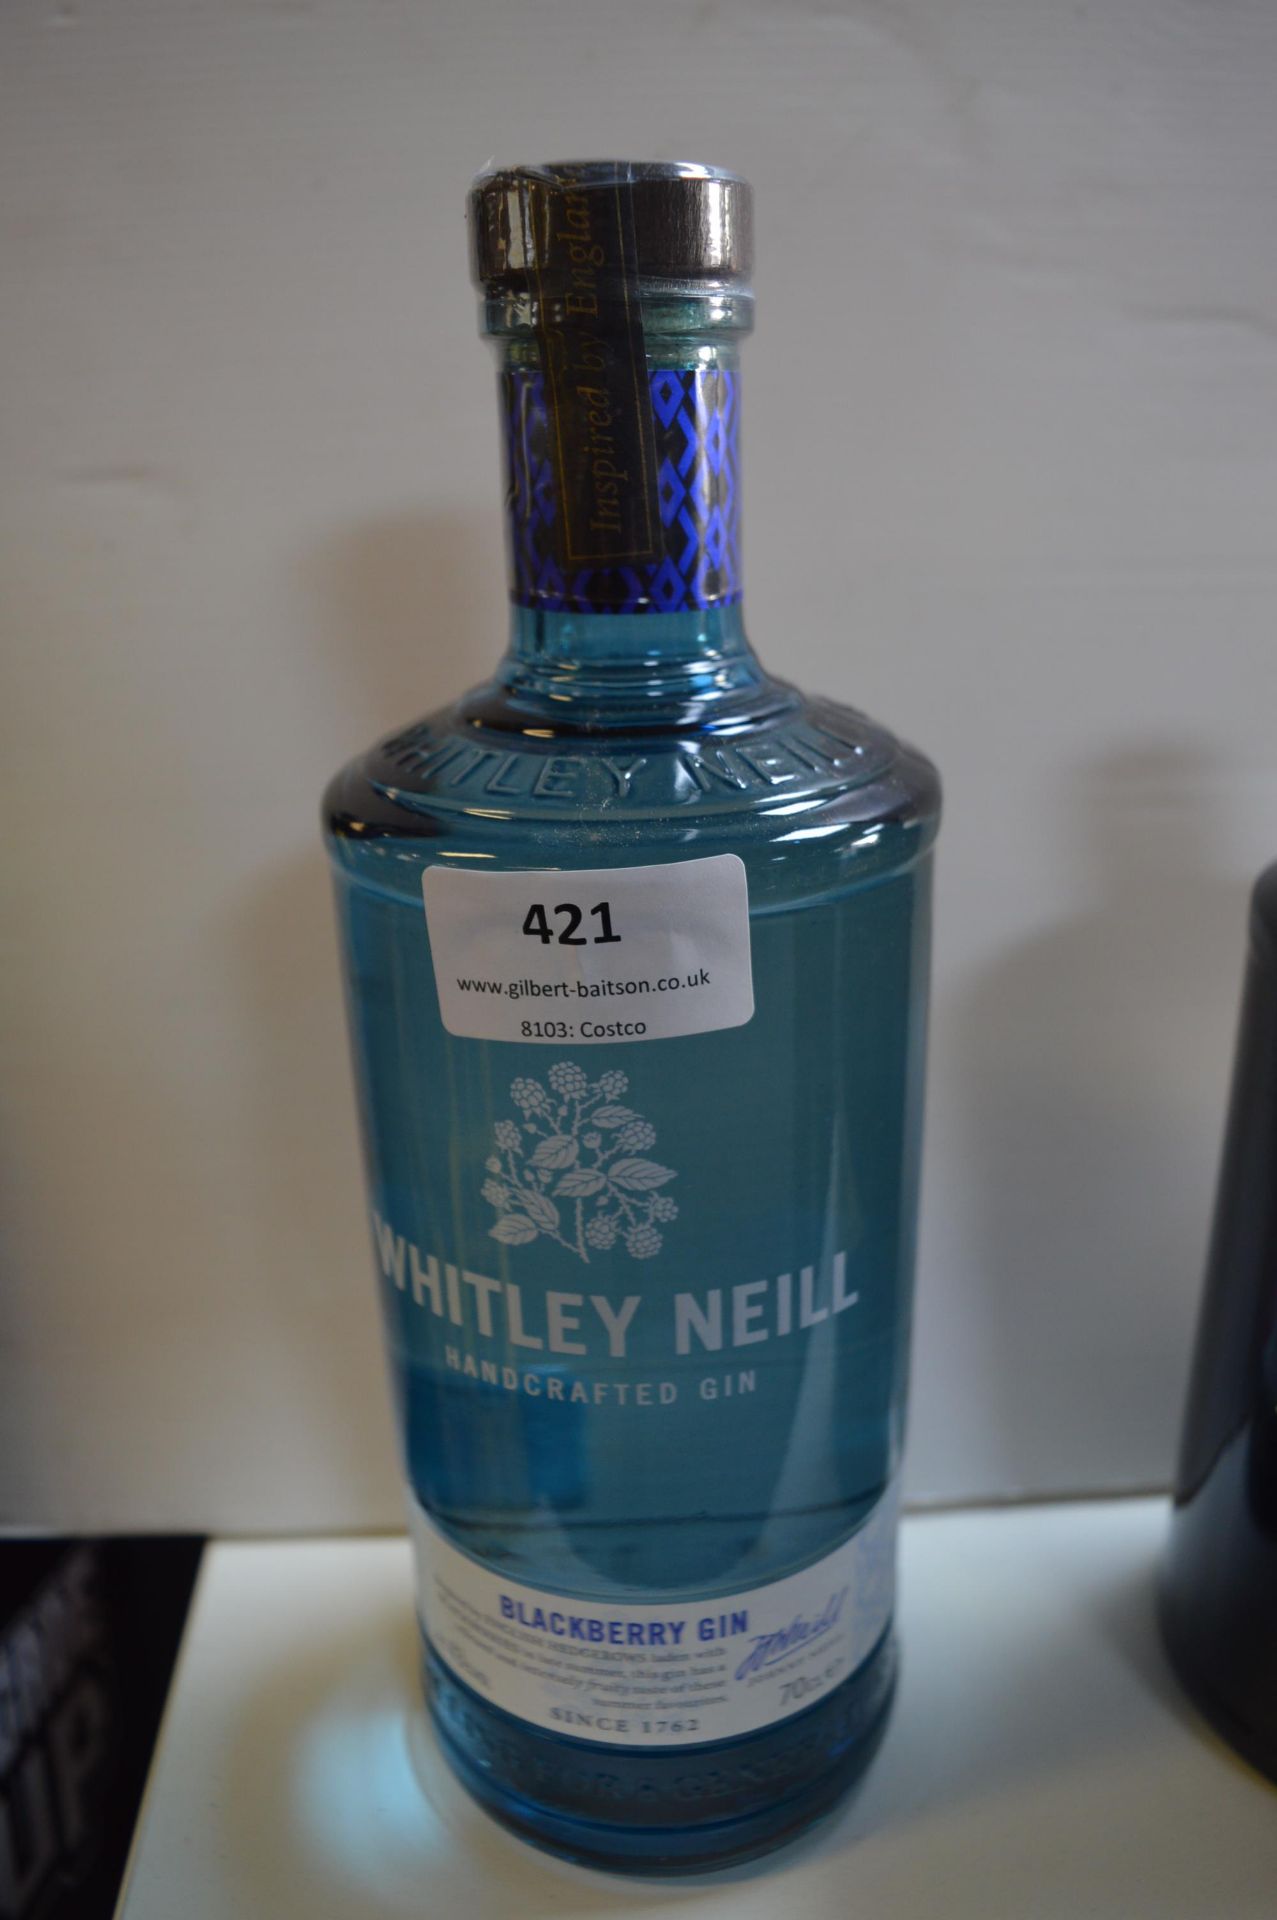 Bottle of Whitley Neill Blackberry Gin